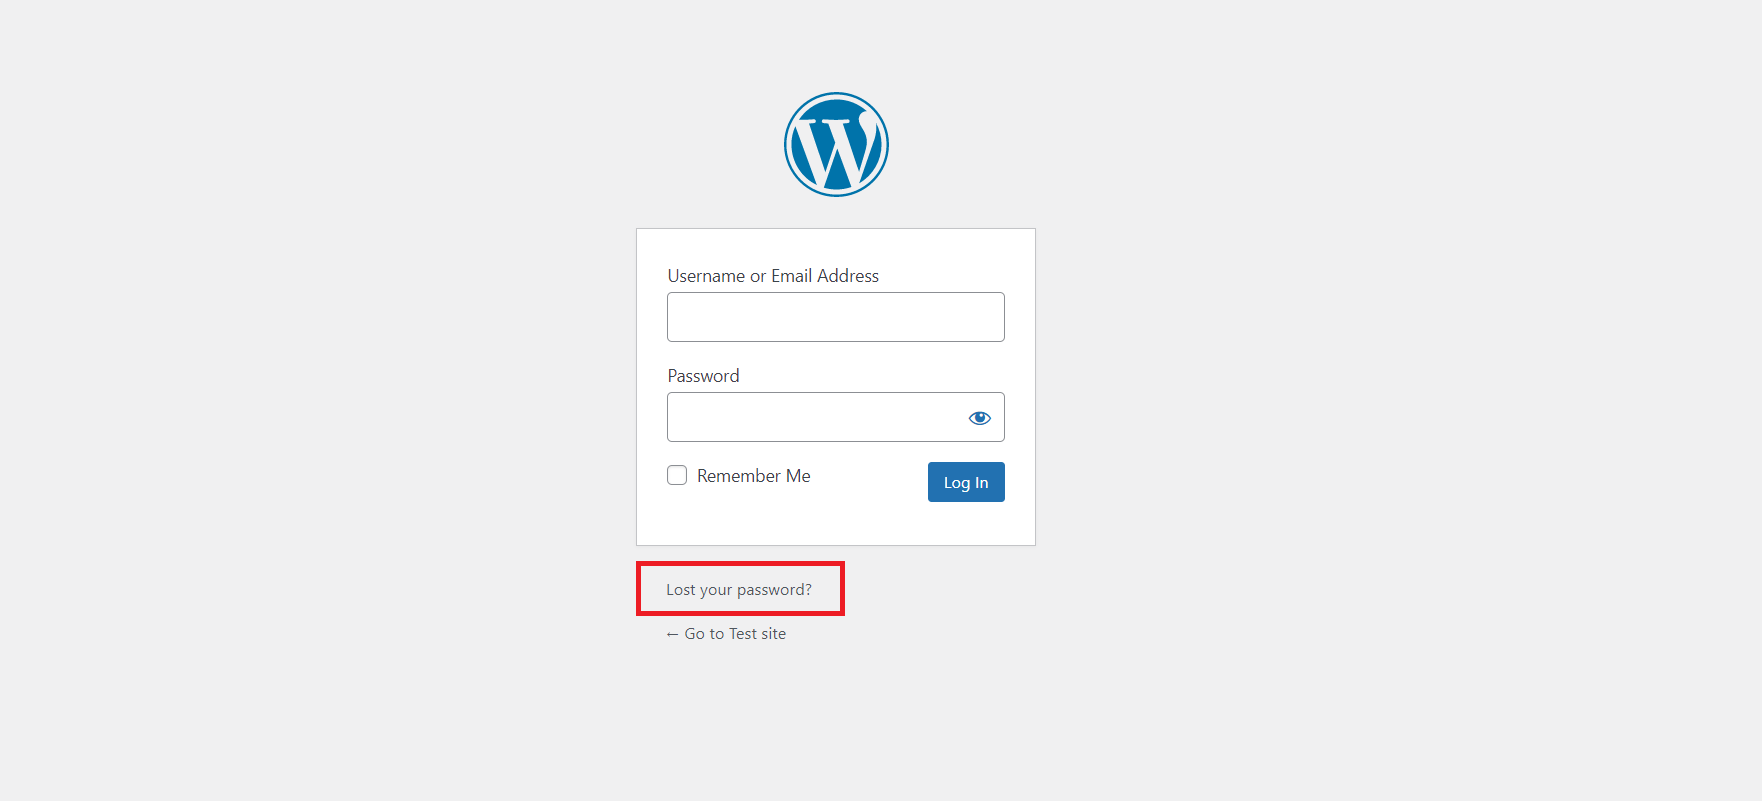 WordPress Login Issues - Password Reset